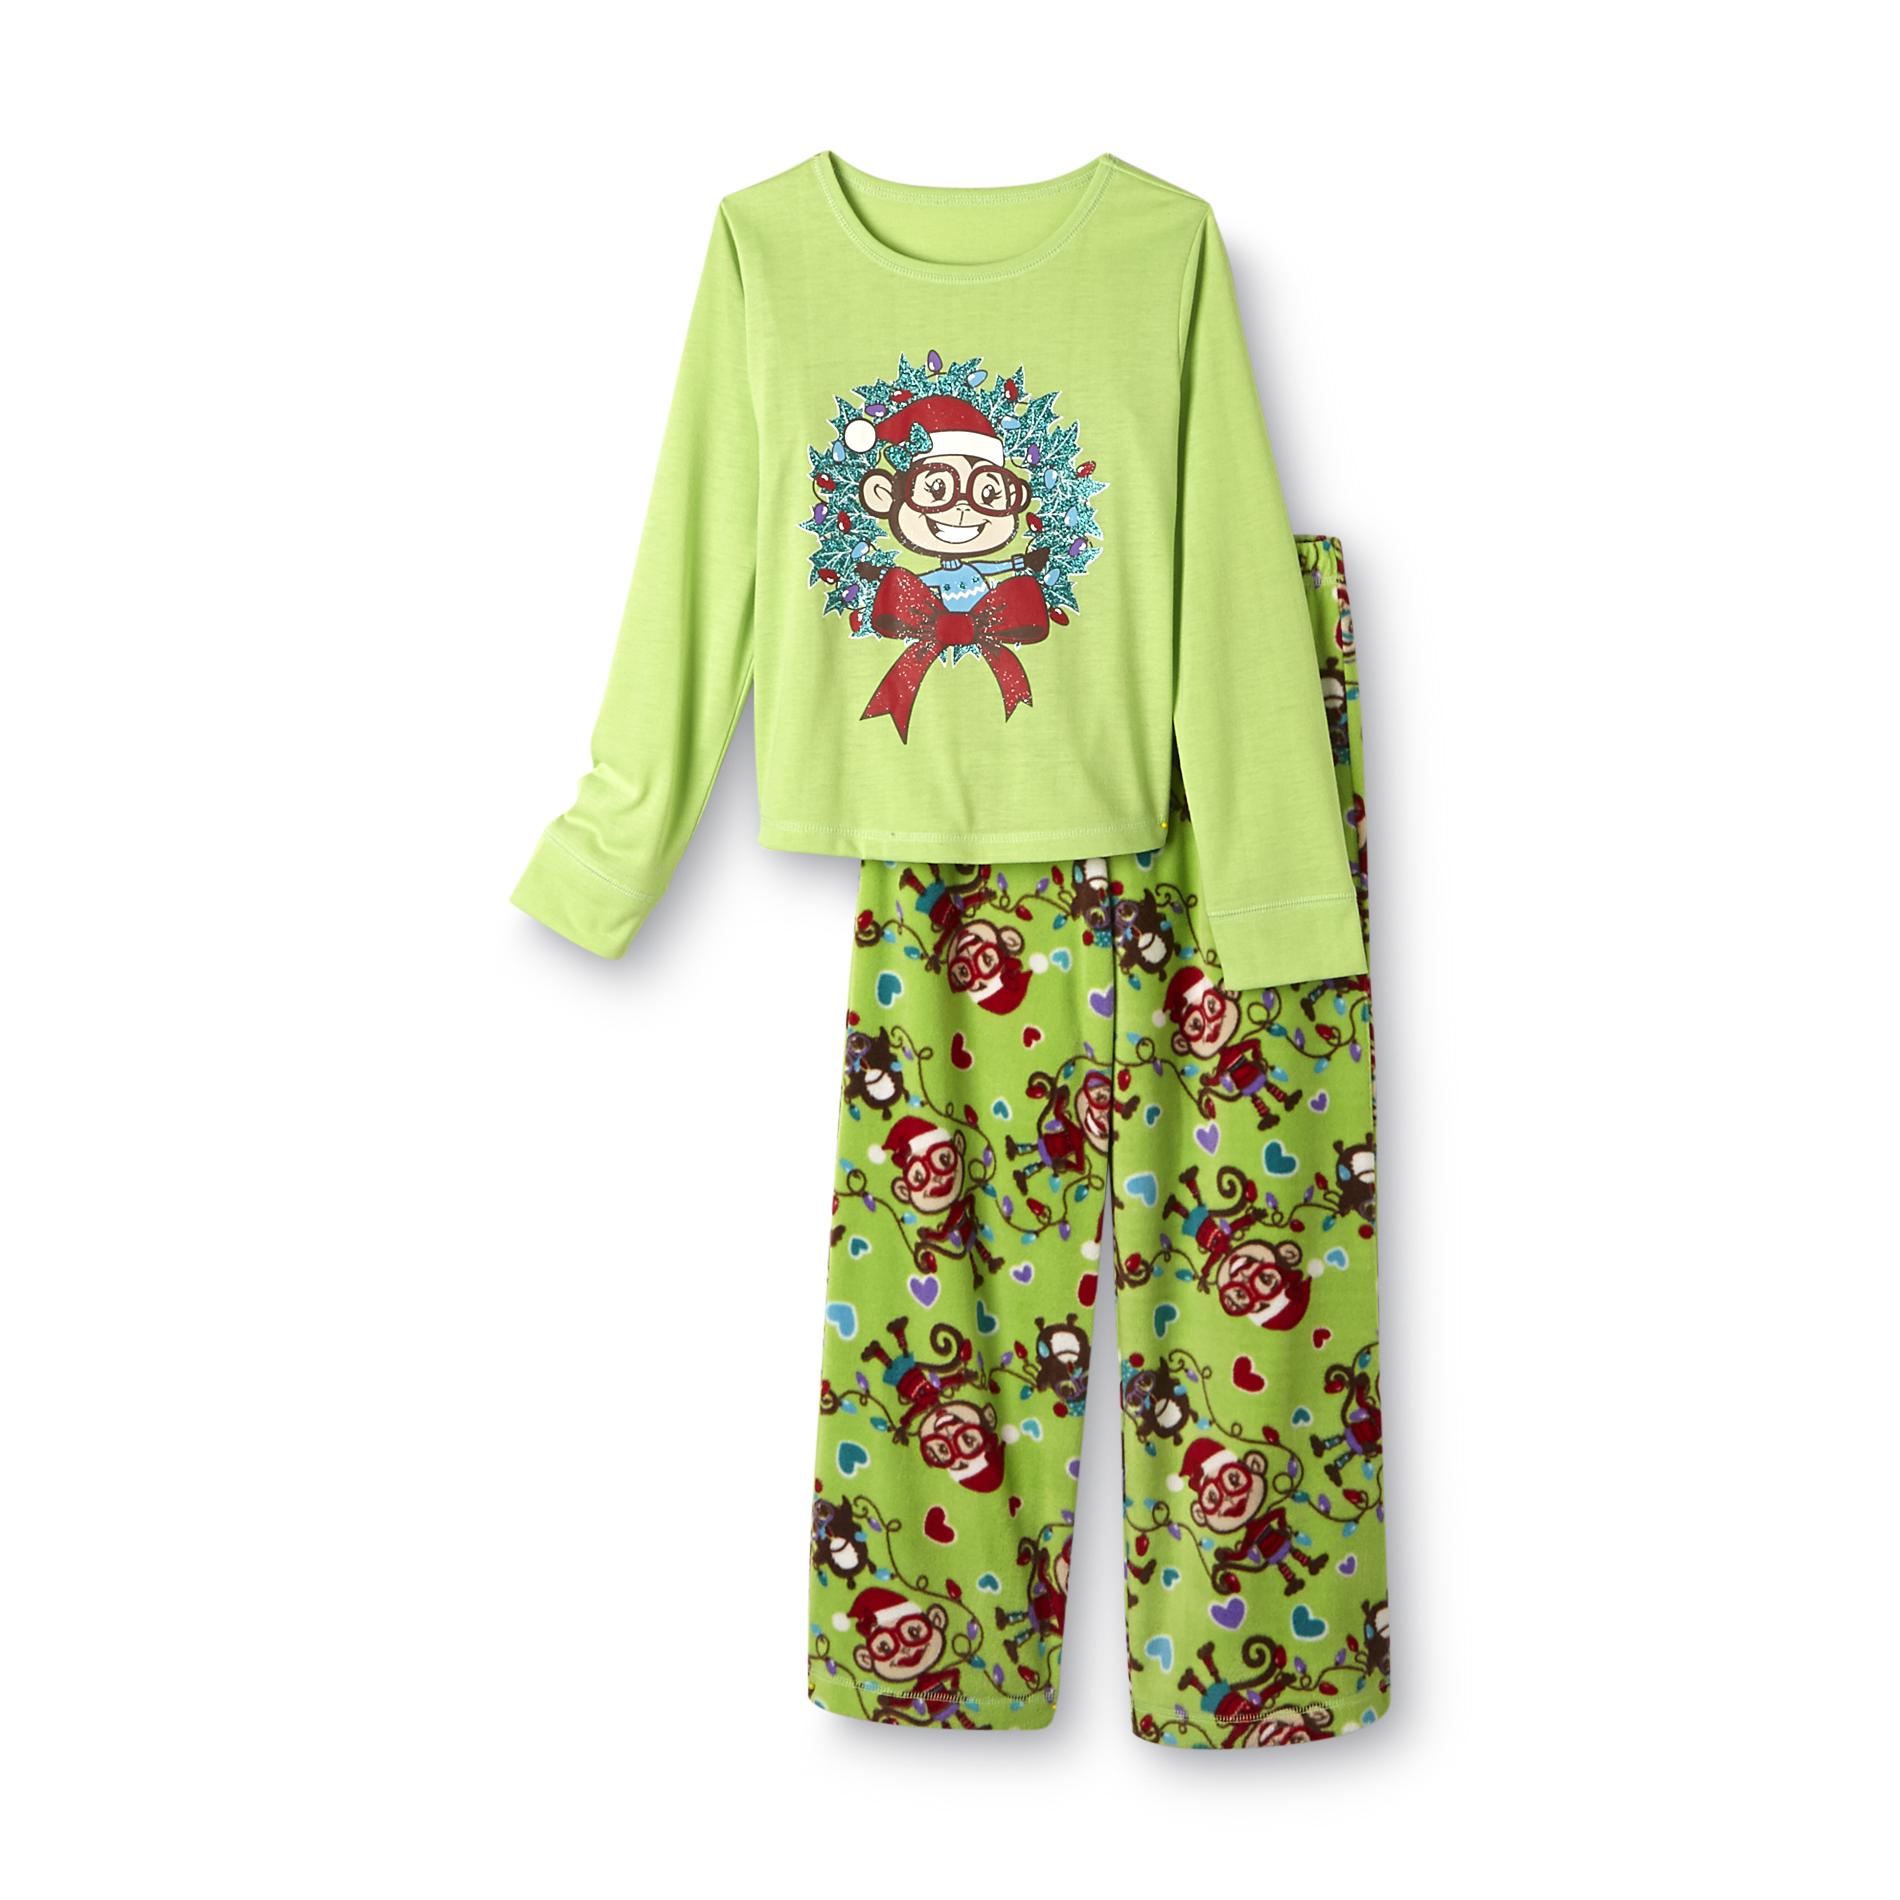 Joe Boxer Girls Graphic Fleece Pajamas - Christmas Monkey